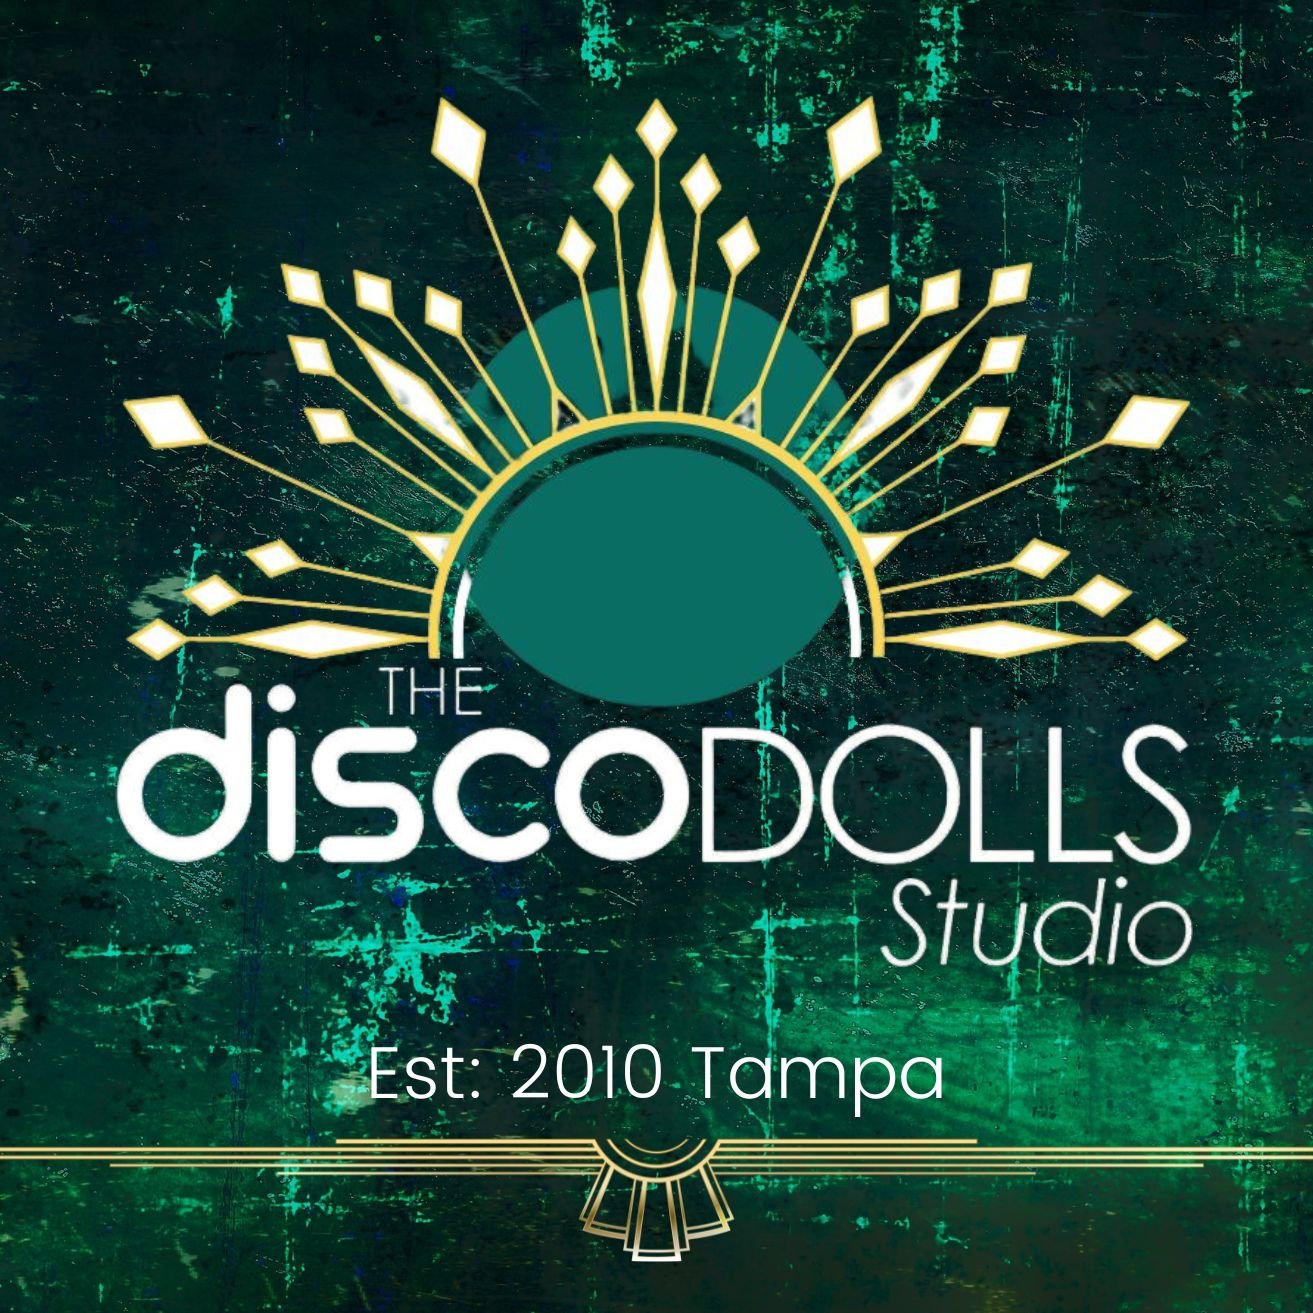 The Disco Dolls Studio